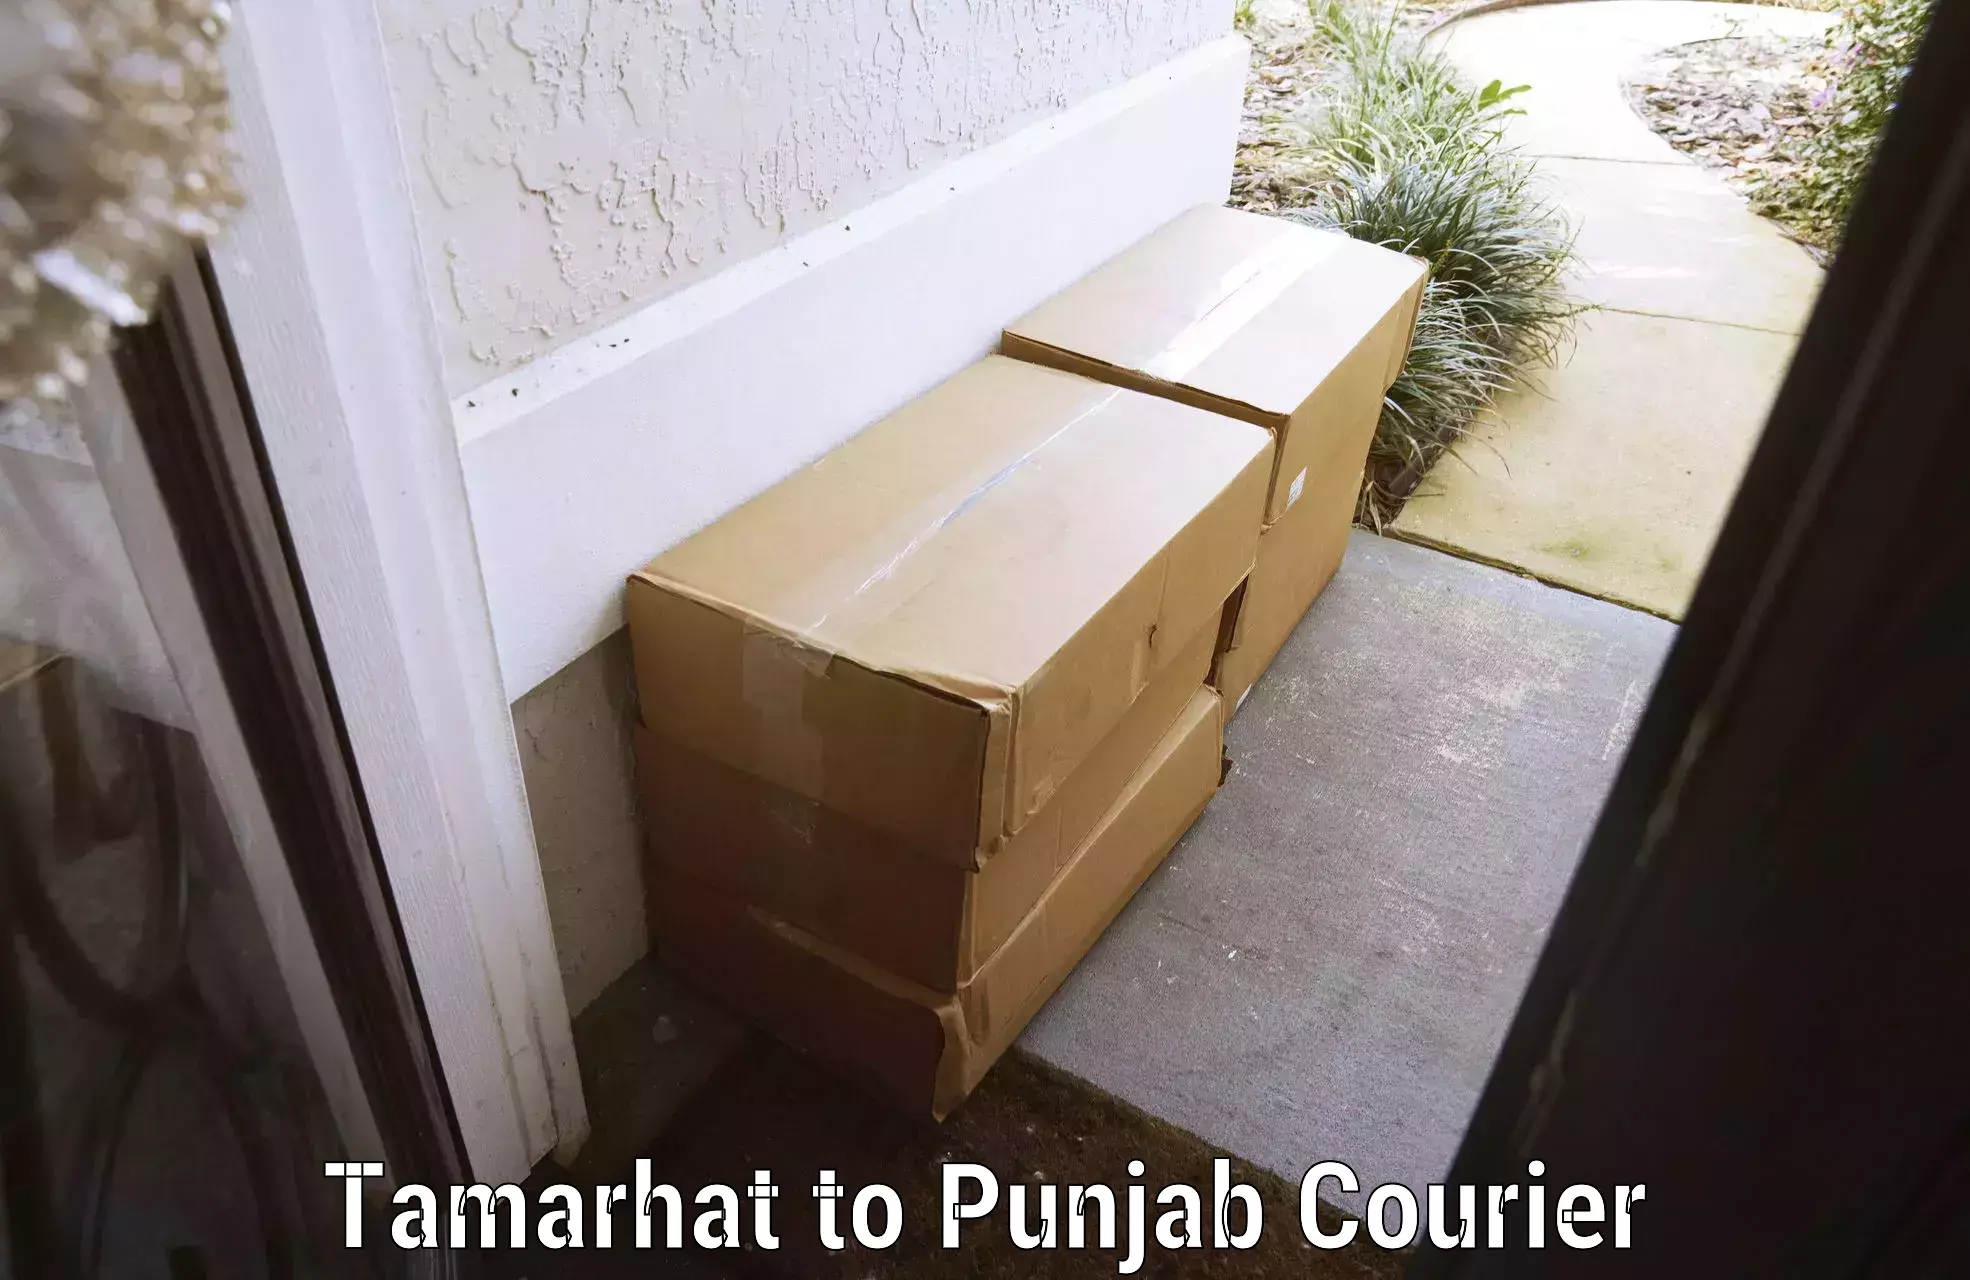 Baggage shipping advice Tamarhat to Punjab